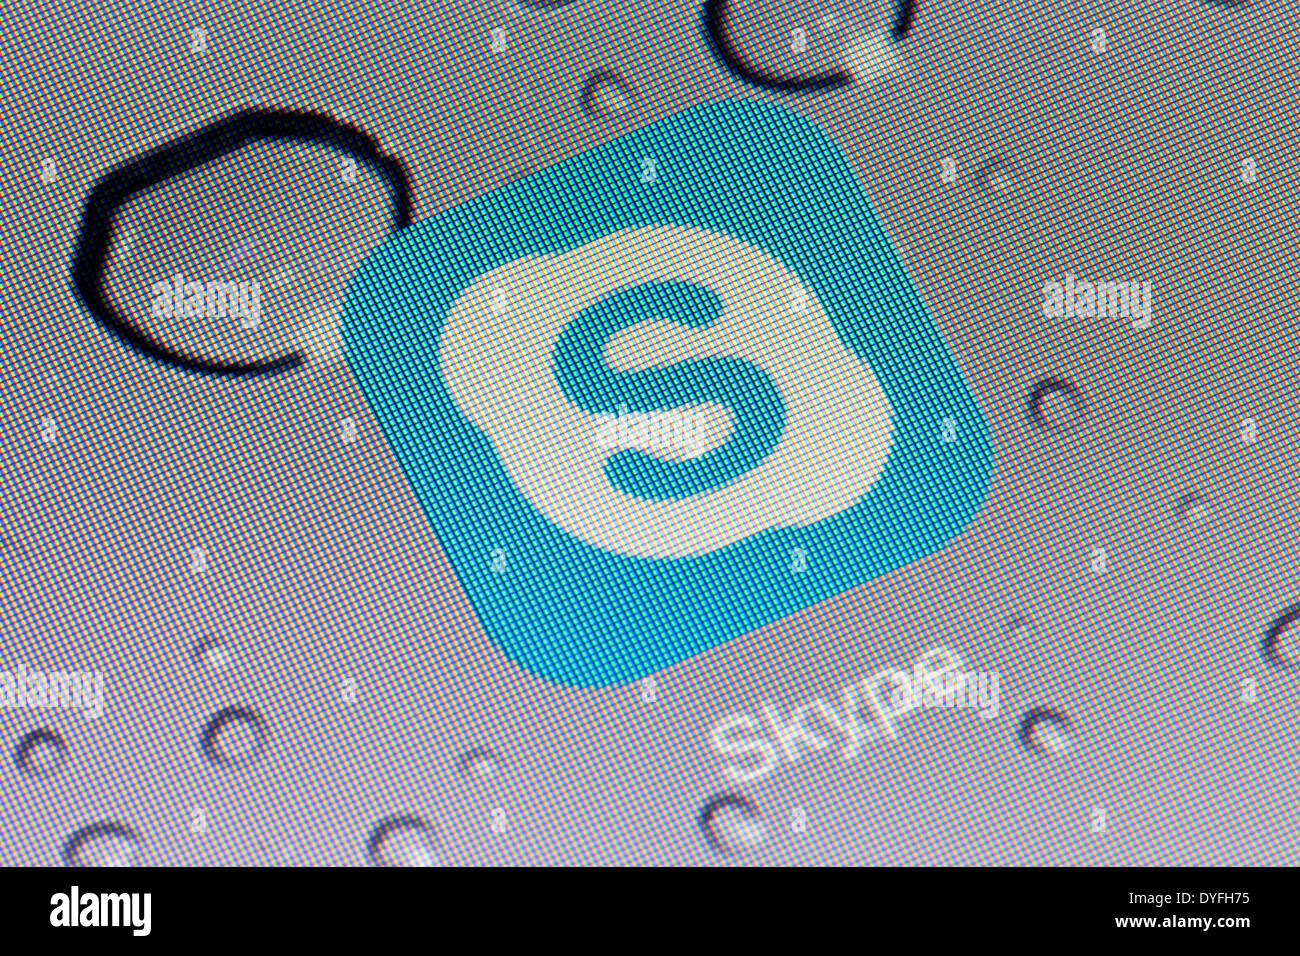 Skype app logo icon on iPad apps logos icons Stock Photo